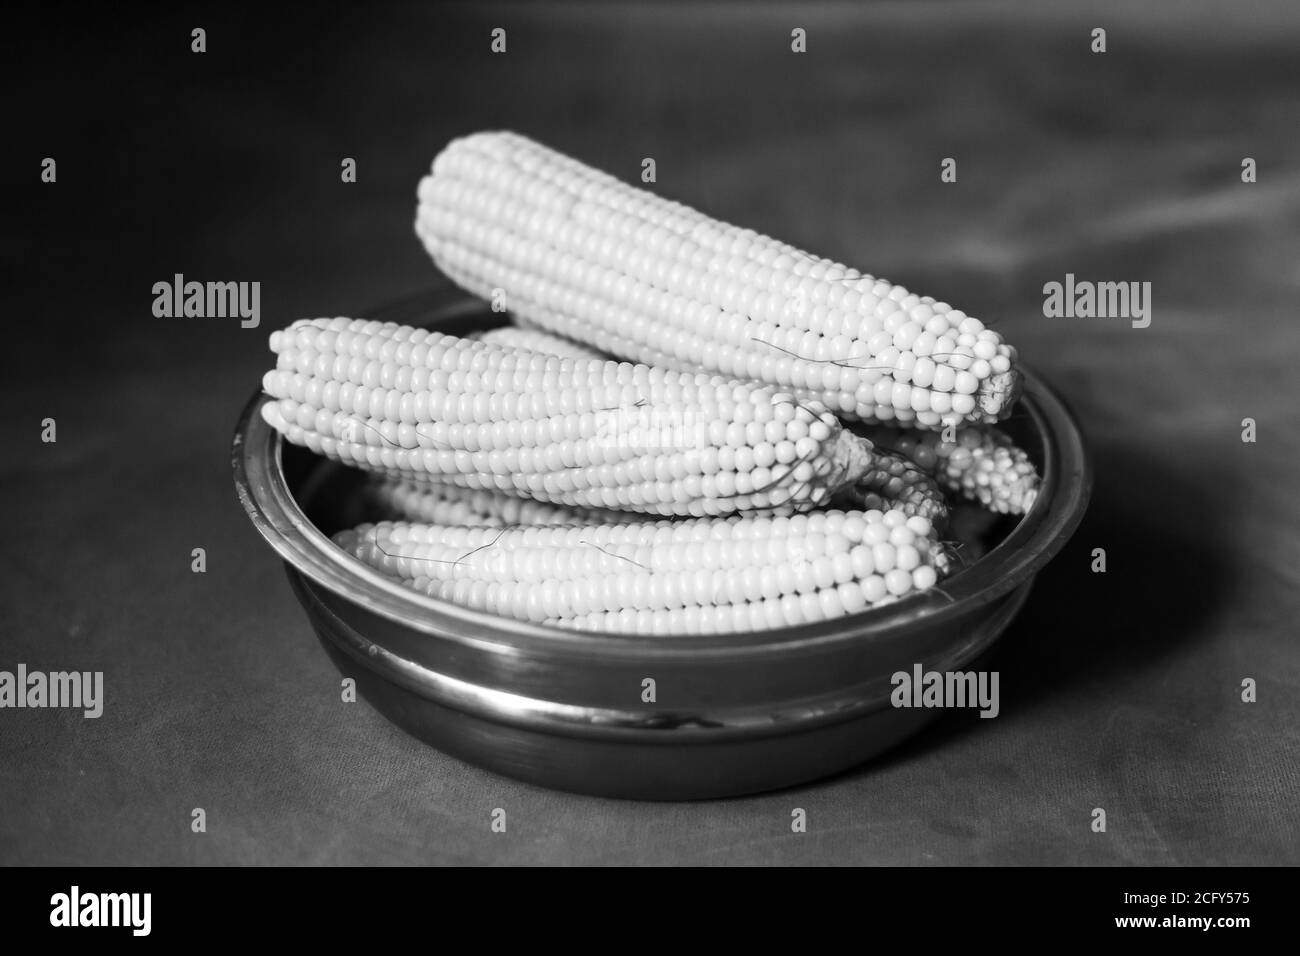 Le maïs cuit dans un bol en acier Banque D'Images